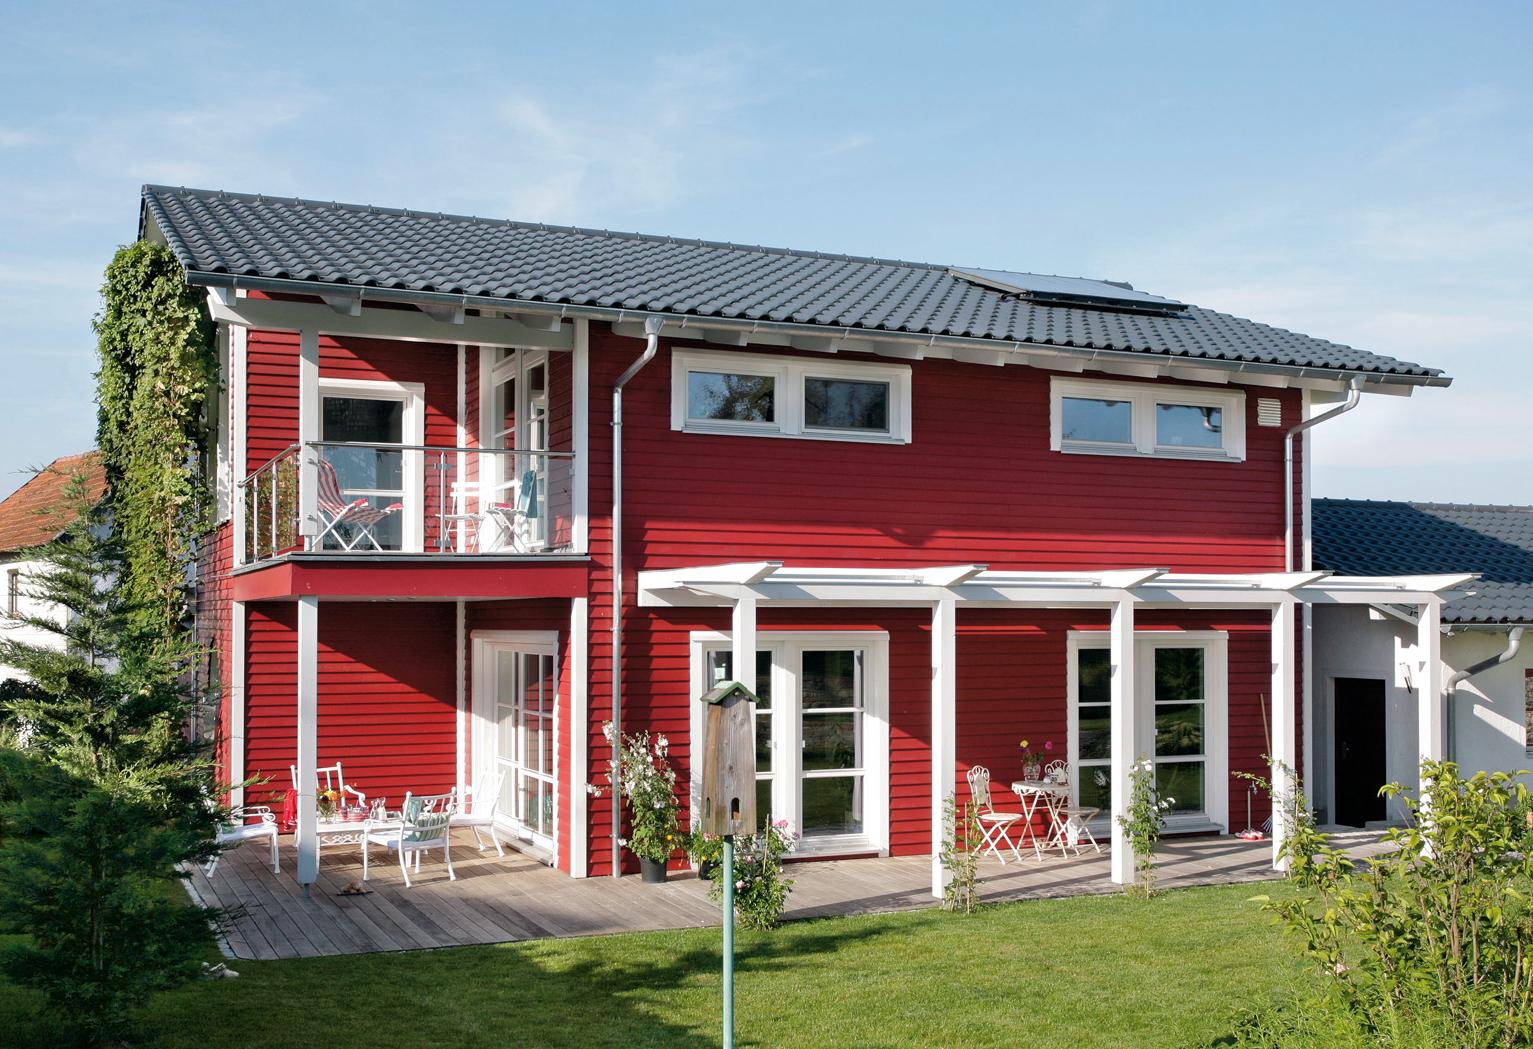 Maison individuelle avec façade en bois rouge dans le style campagnard